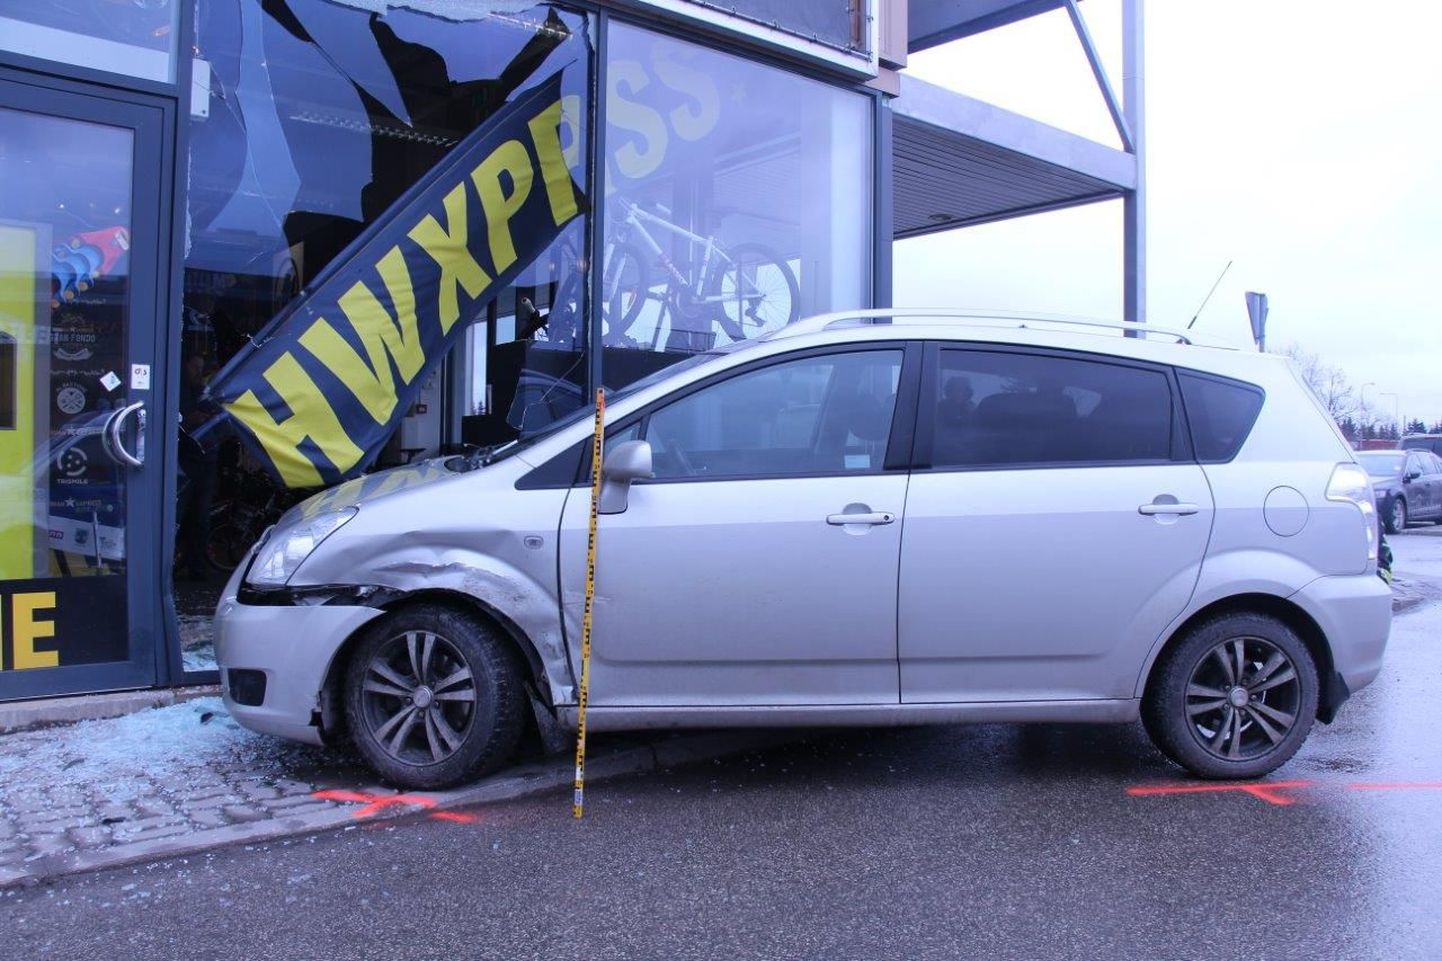 Tartus Ringtee tänaval põrkasid 15. märtsil kokku kaks autot, millest üks paiskus kaupluse aknasse.